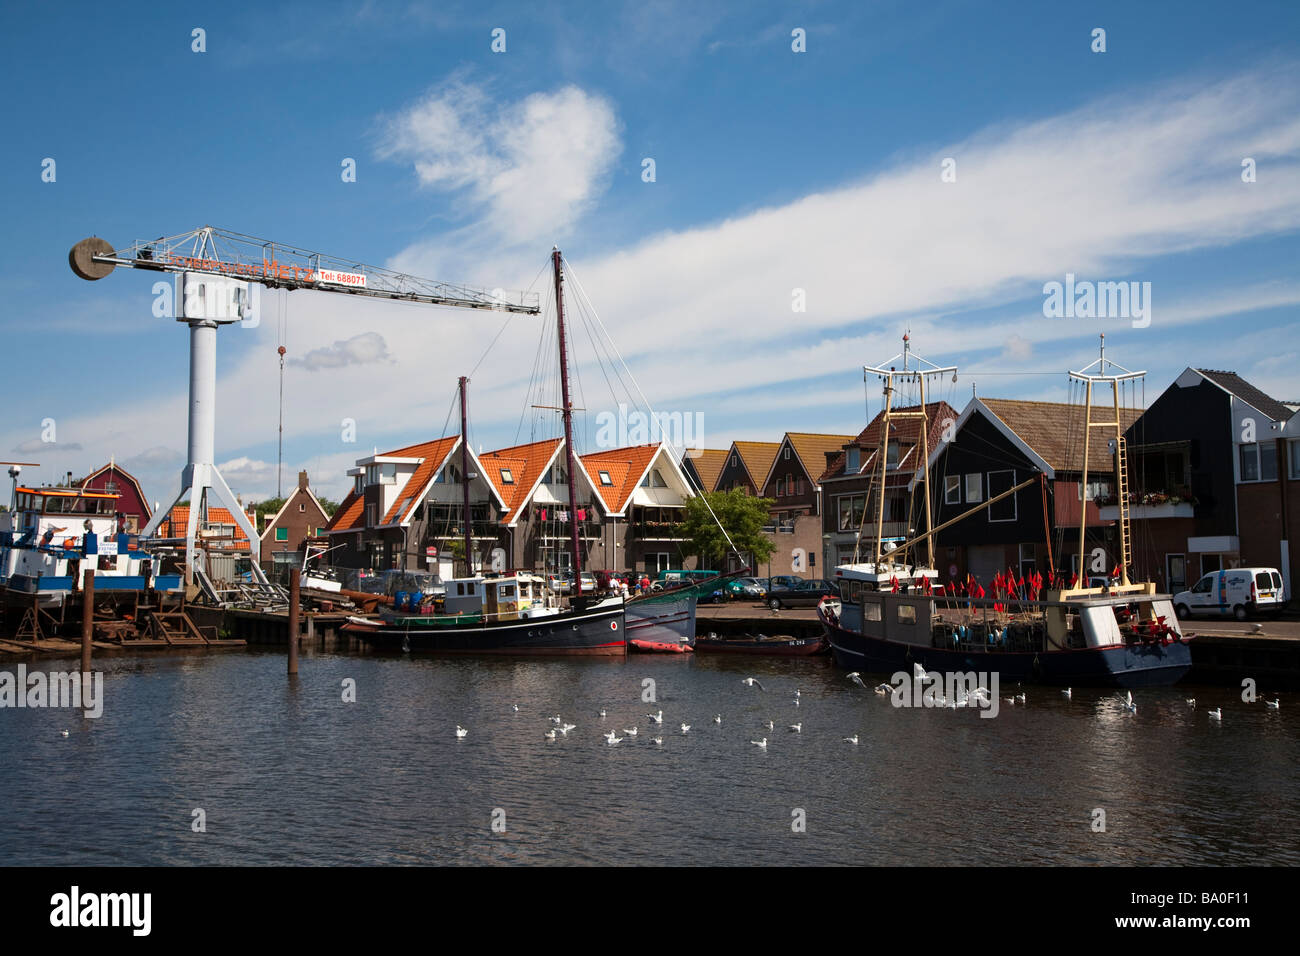 Bateaux de pêche au port avec maisons modernes d'Urk Pays-Bas Banque D'Images